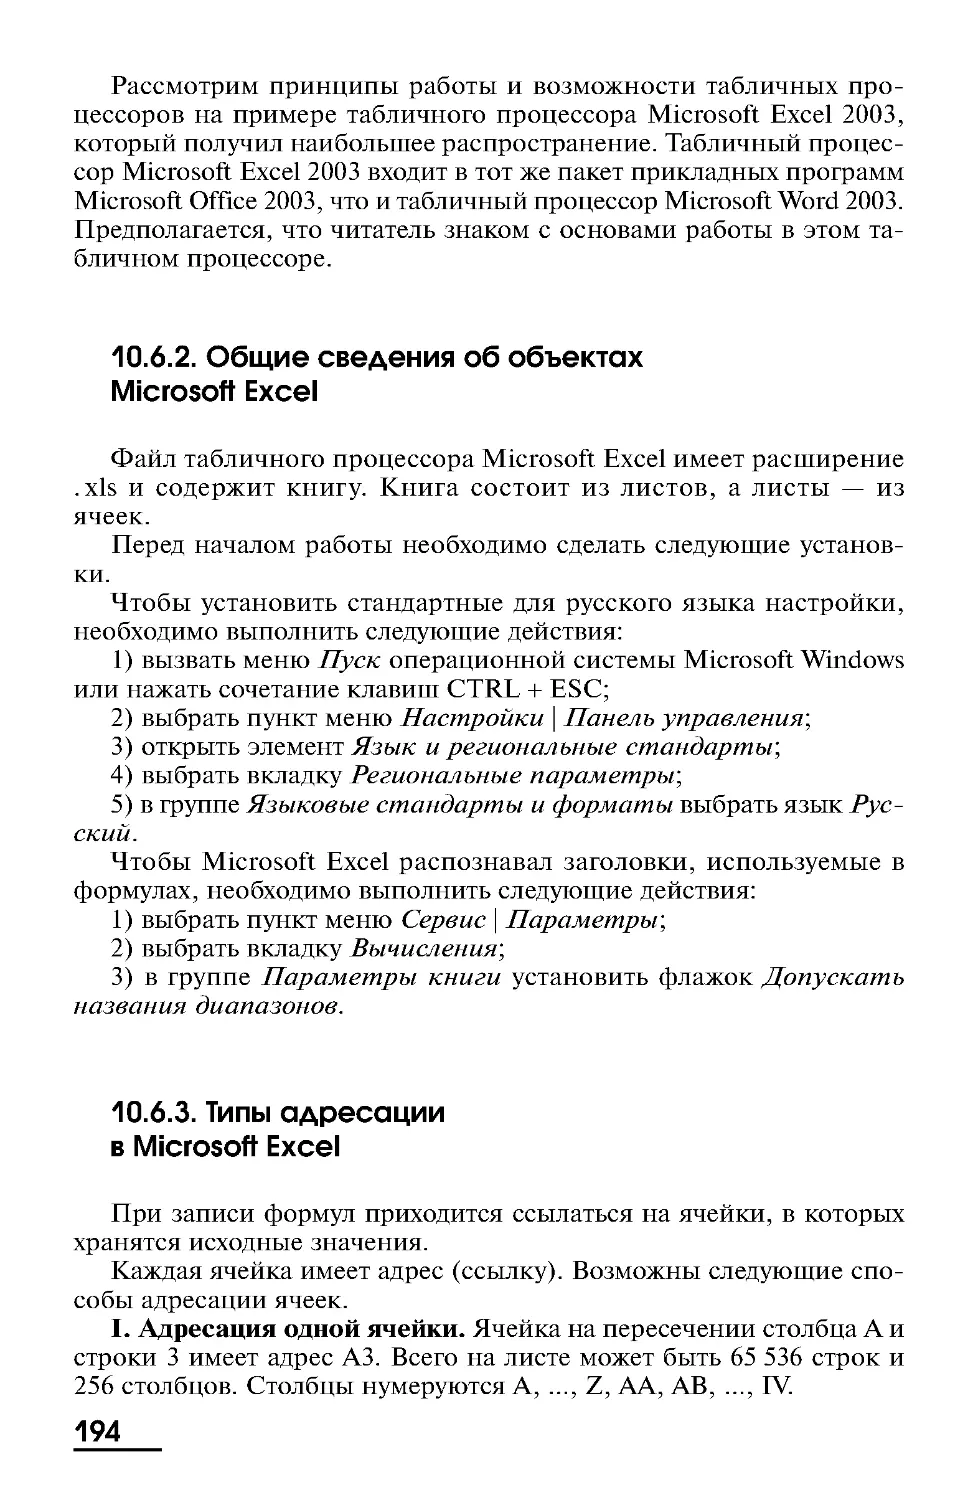 10.6.2. Общие сведения об объектах Microsoft Excel
10.6.3. Типы адресации в Microsoft Excel